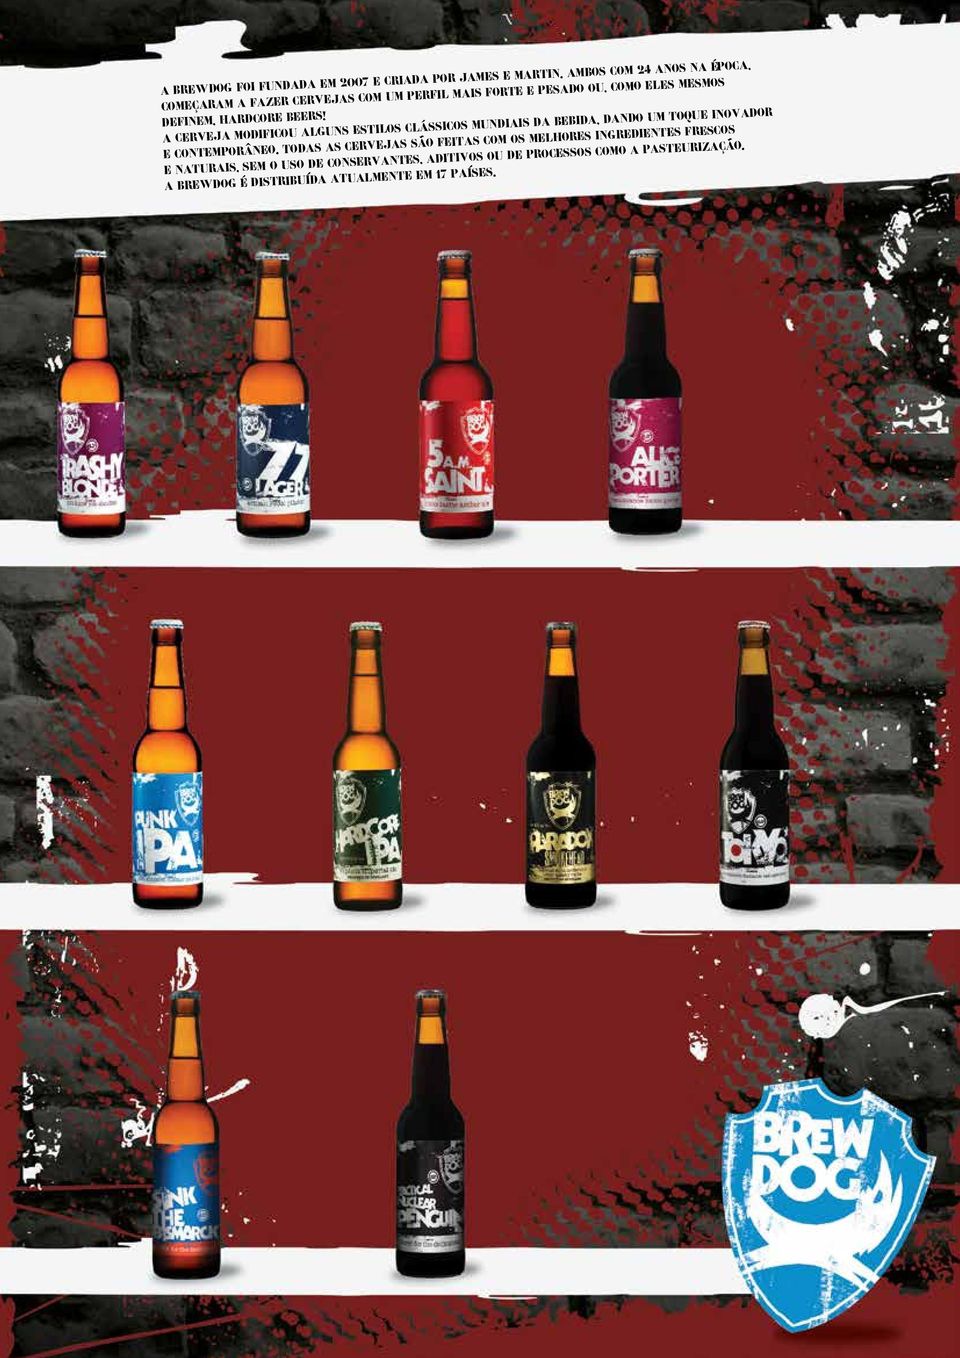 hardcore beers! A cerveja modificou alguns estilos clássicos mundiais da bebida, dando um toque inovador e contemporâneo.